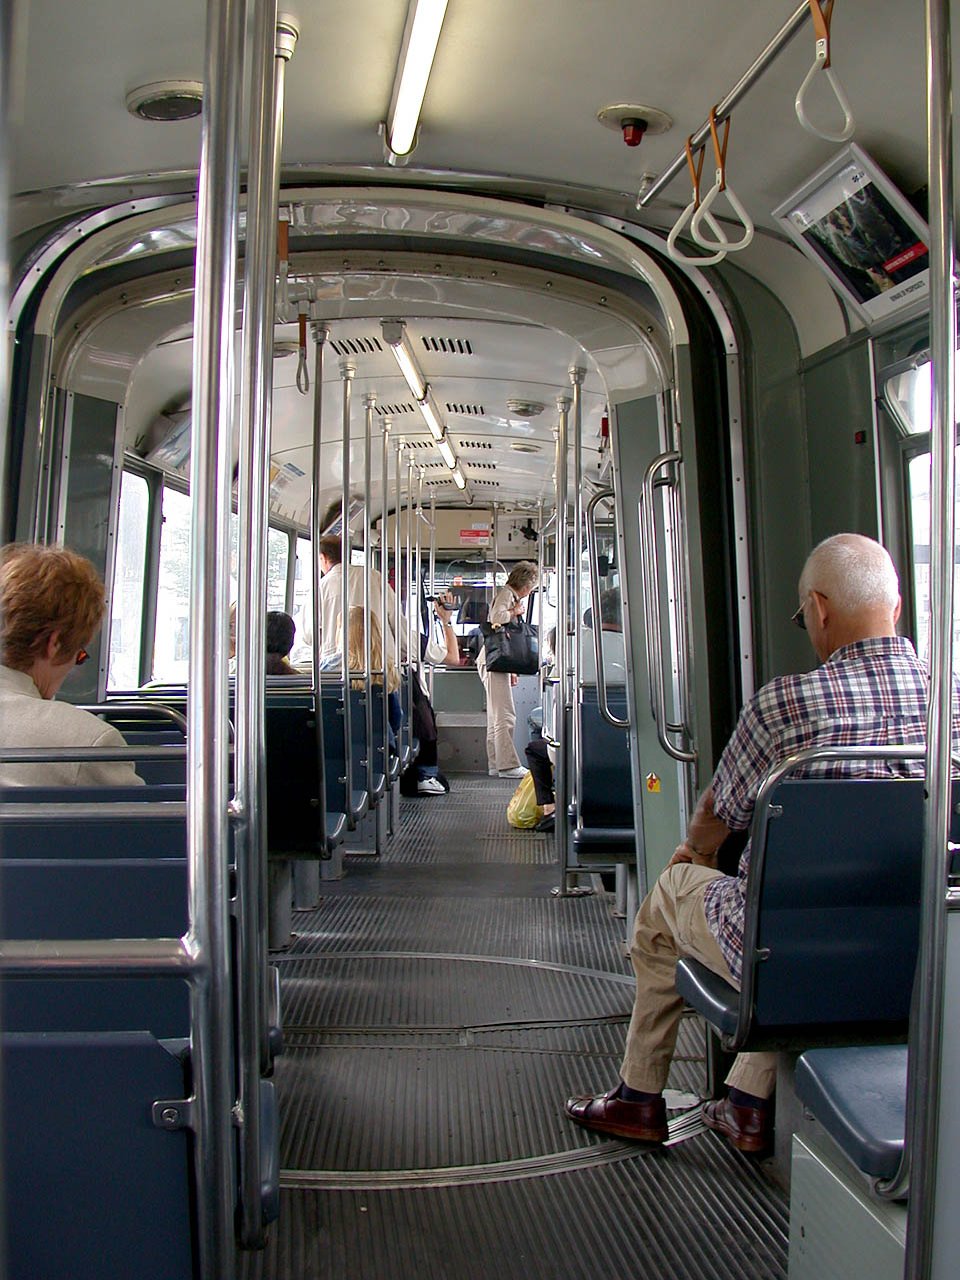 9G 787 Mit 64 Suítzplätzen bieten diese Straßenbahn insgesamt 155 Personen Platz. The crushload is 155 and there are 64 seats in this tram.